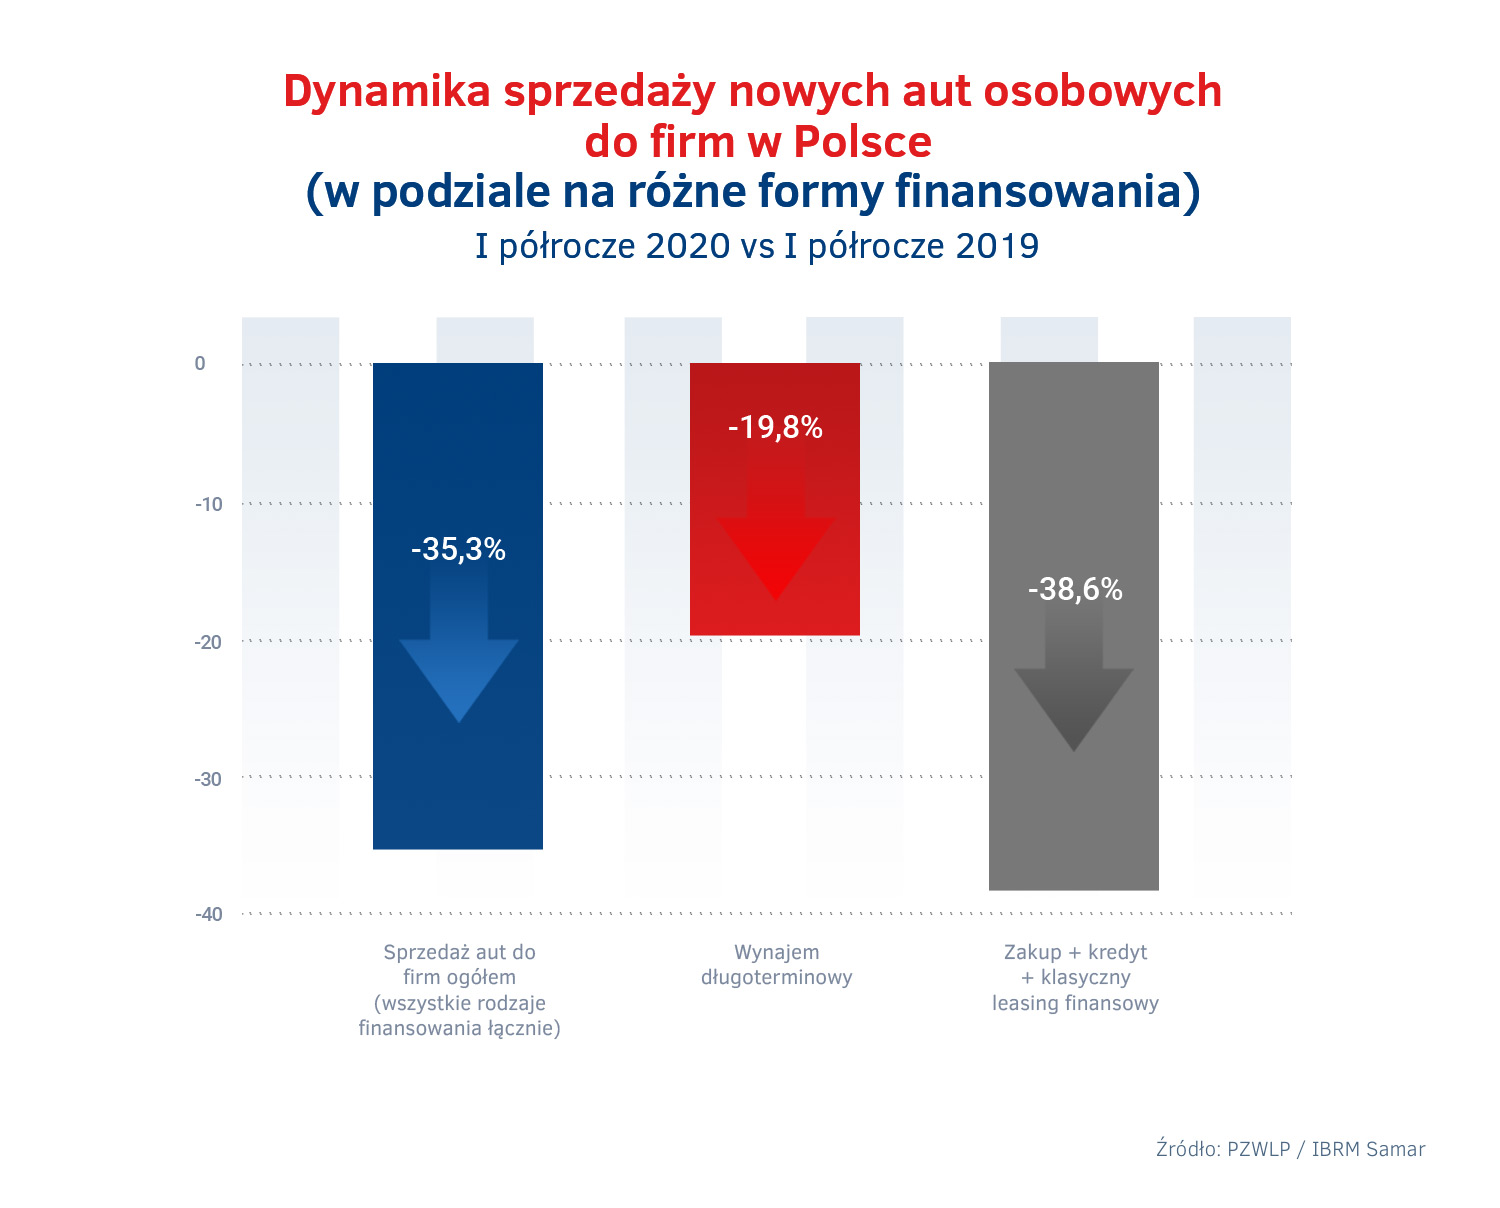 Dynamika sprzedazy nowych aut osobowych w Polsce w I polroczu 2020